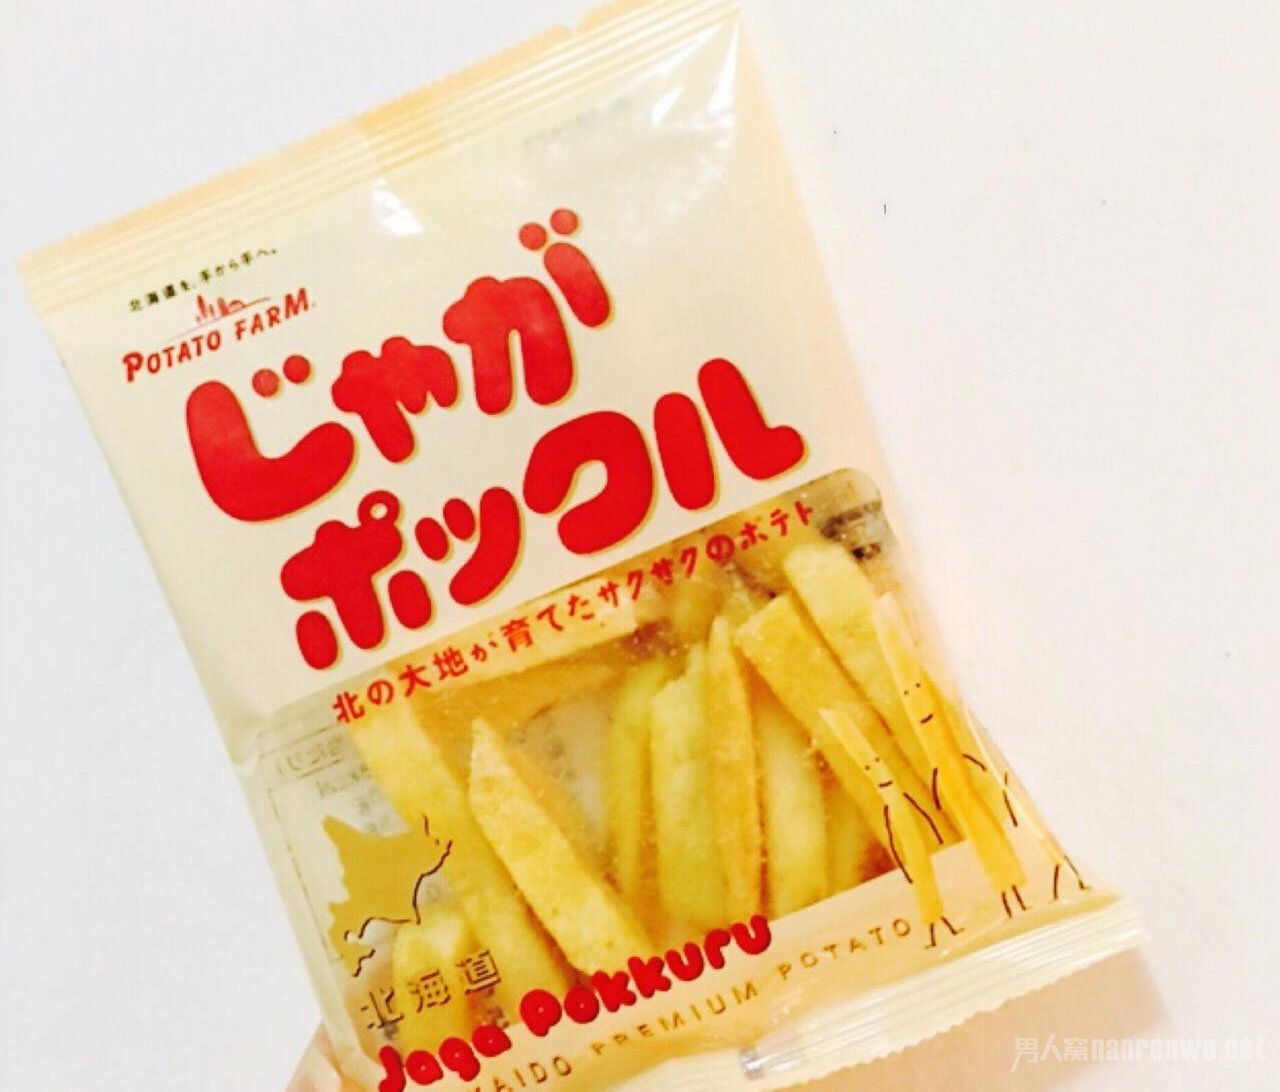 北海道 Potato Farm 薯条三兄弟